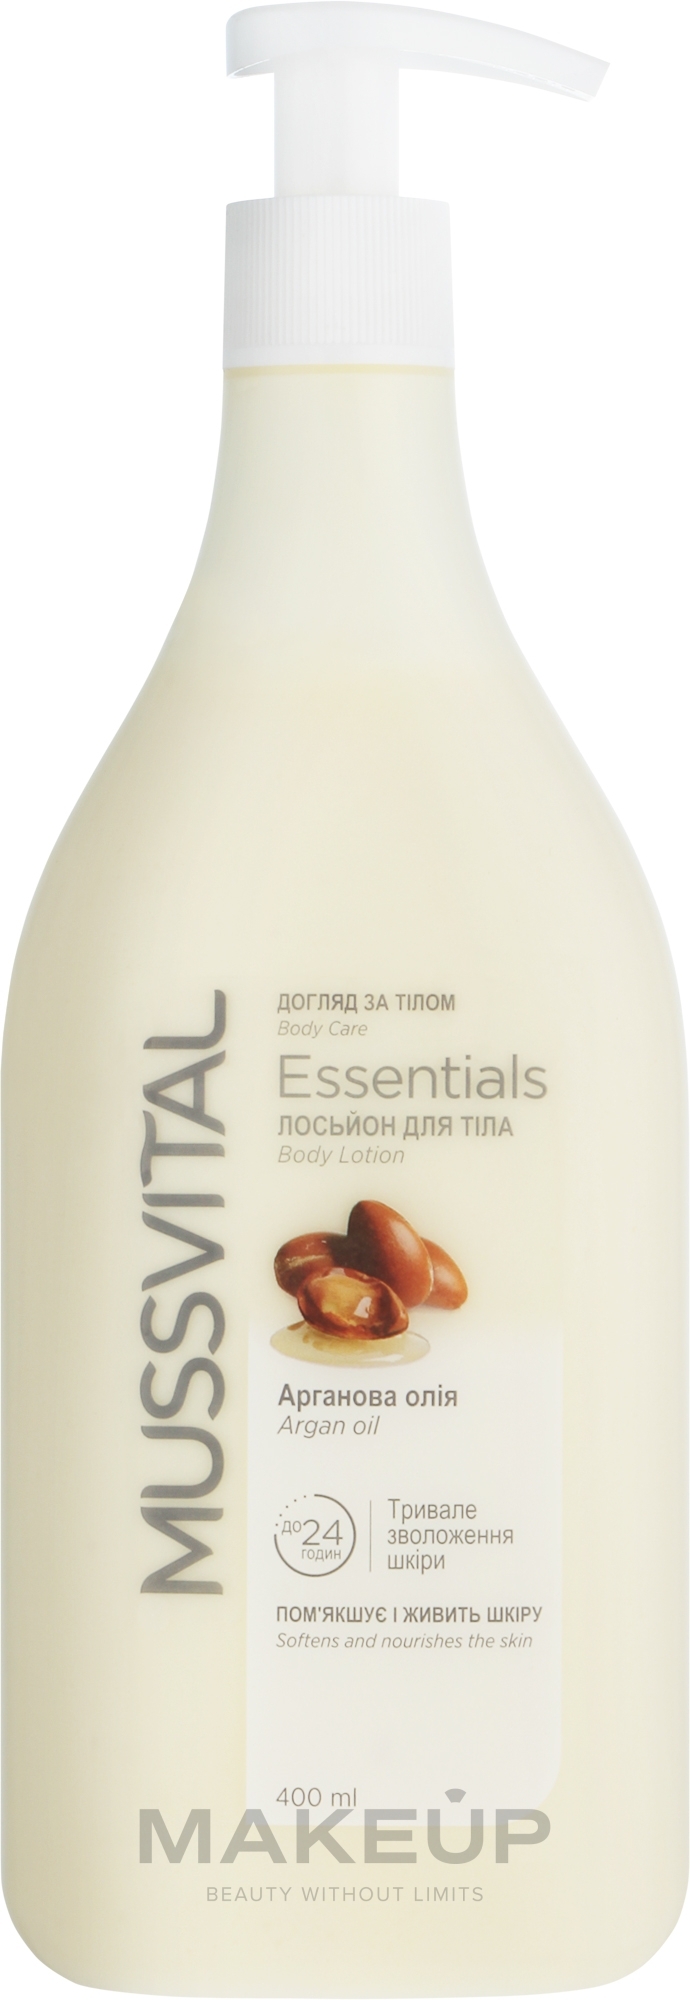 Лосьон для тела с аргановым маслом - Mussvital Essentials Argan Oil Body Lotion — фото 400ml